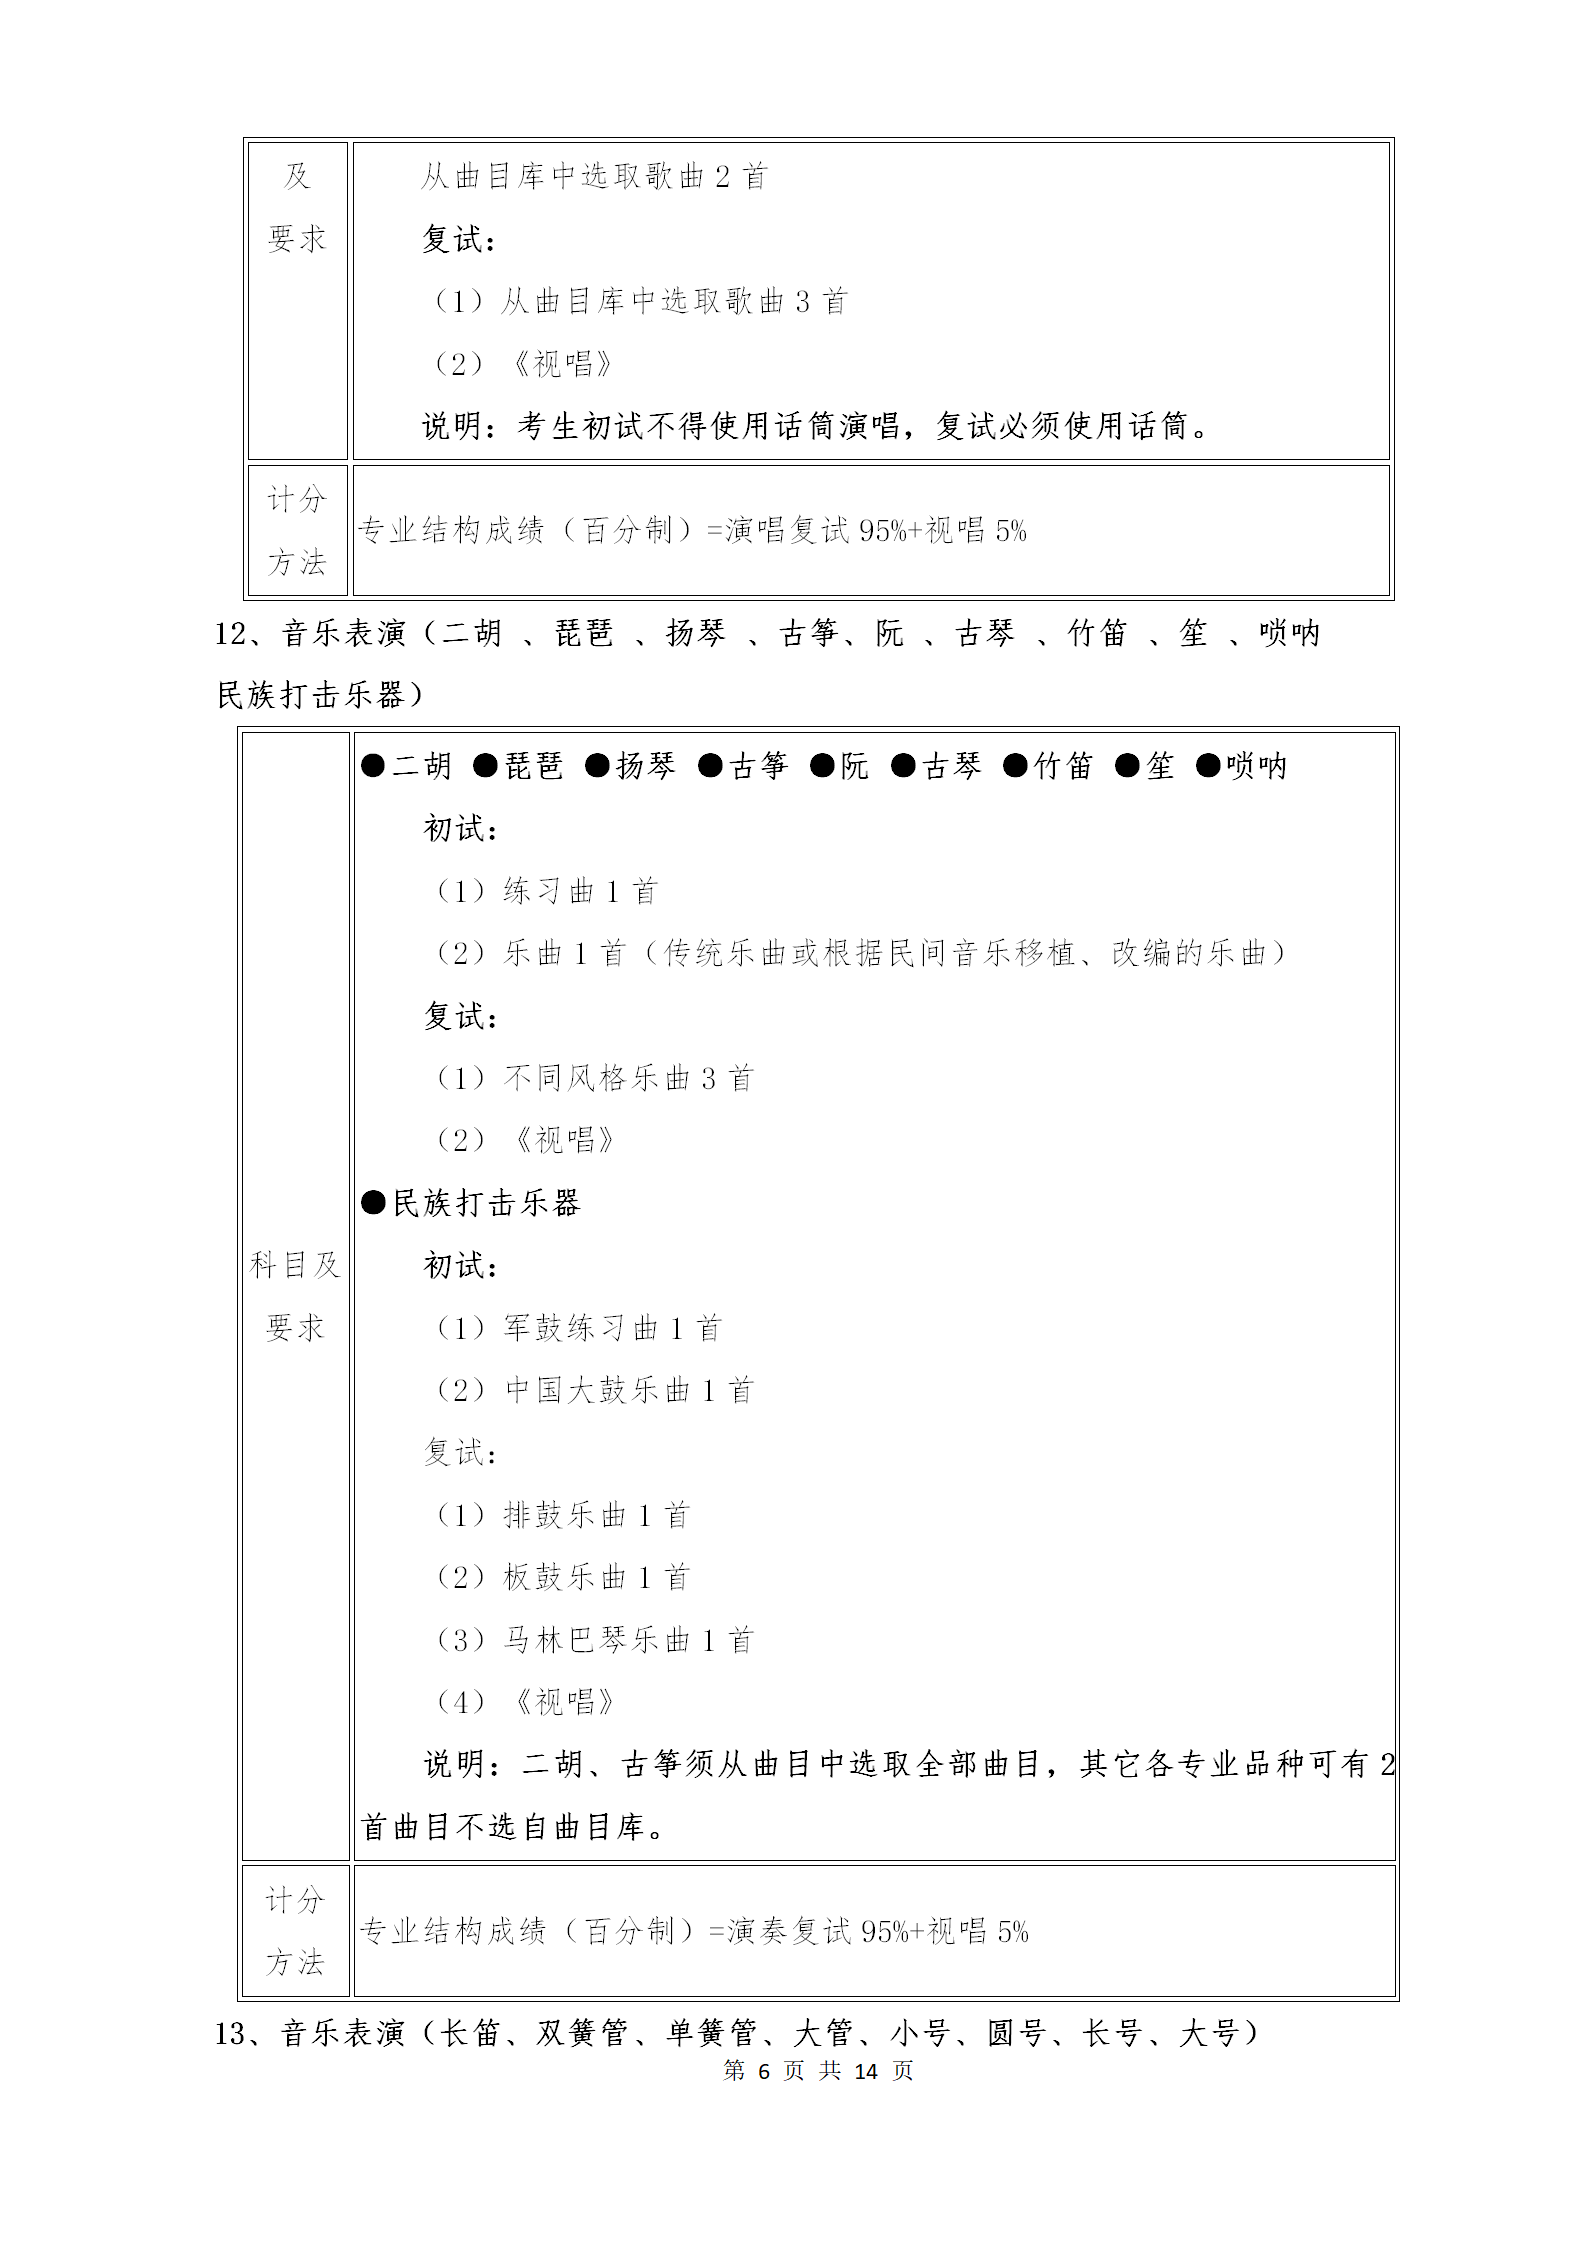 附件1：武汉音乐学院2021年普通本科招生专业考试内容和计分方法（调整版）_06.png